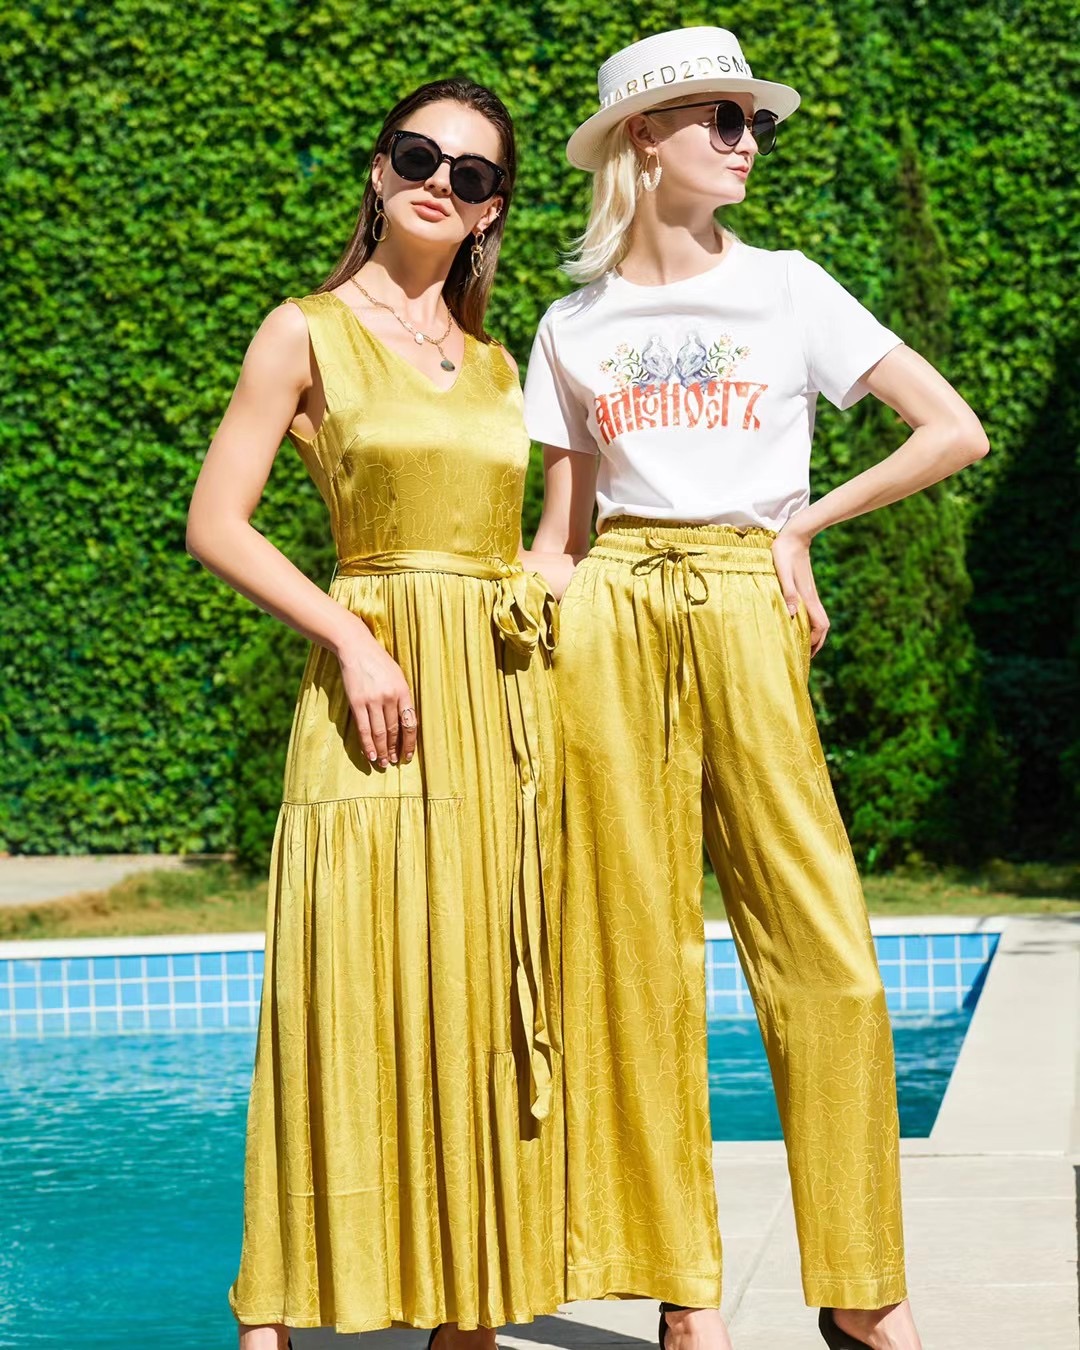 法国轻奢女装品牌ba&sh 带你领略夏日的艺术气息_凤凰网